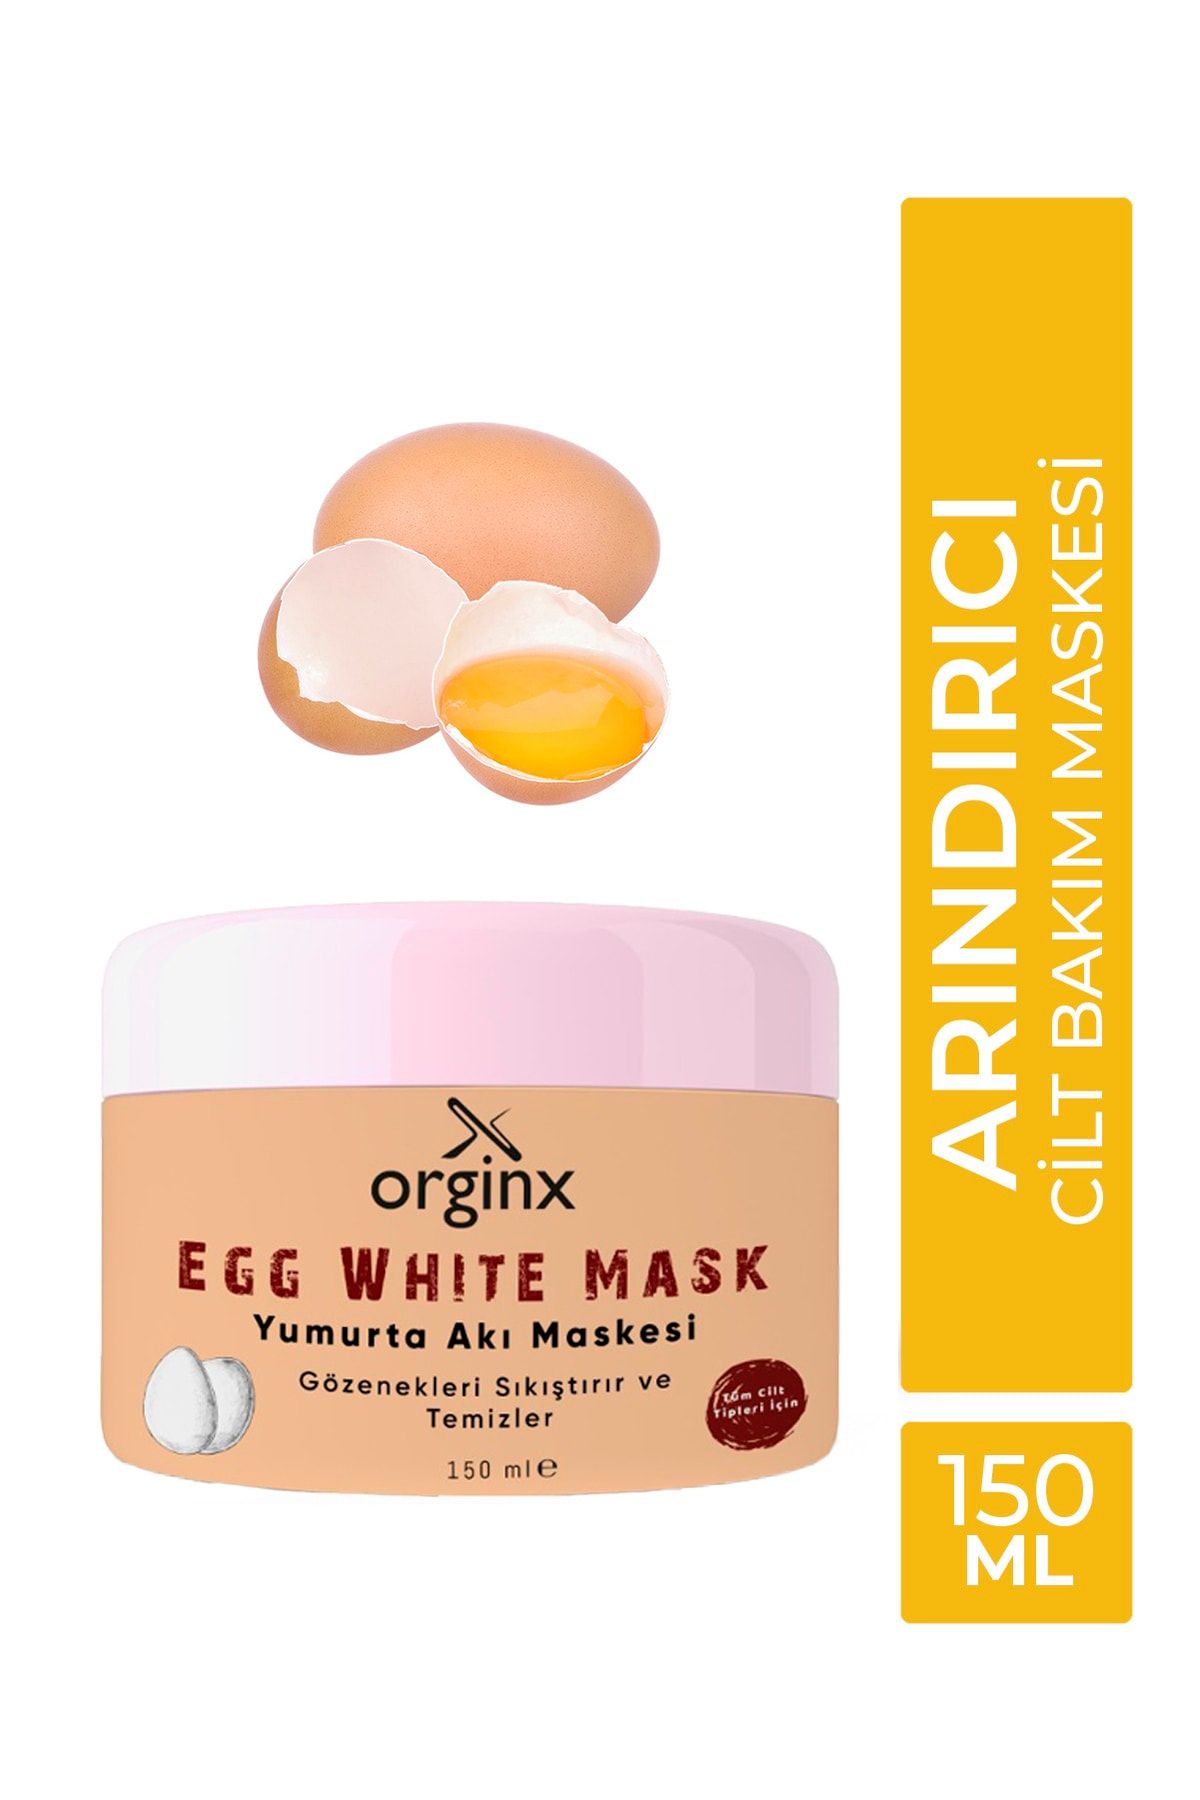 Orginx Yumurta Akı Maskesi Siyah Nokta Sivilce Karşıtı Ve Gözenek Temizleyici Maske 150ml